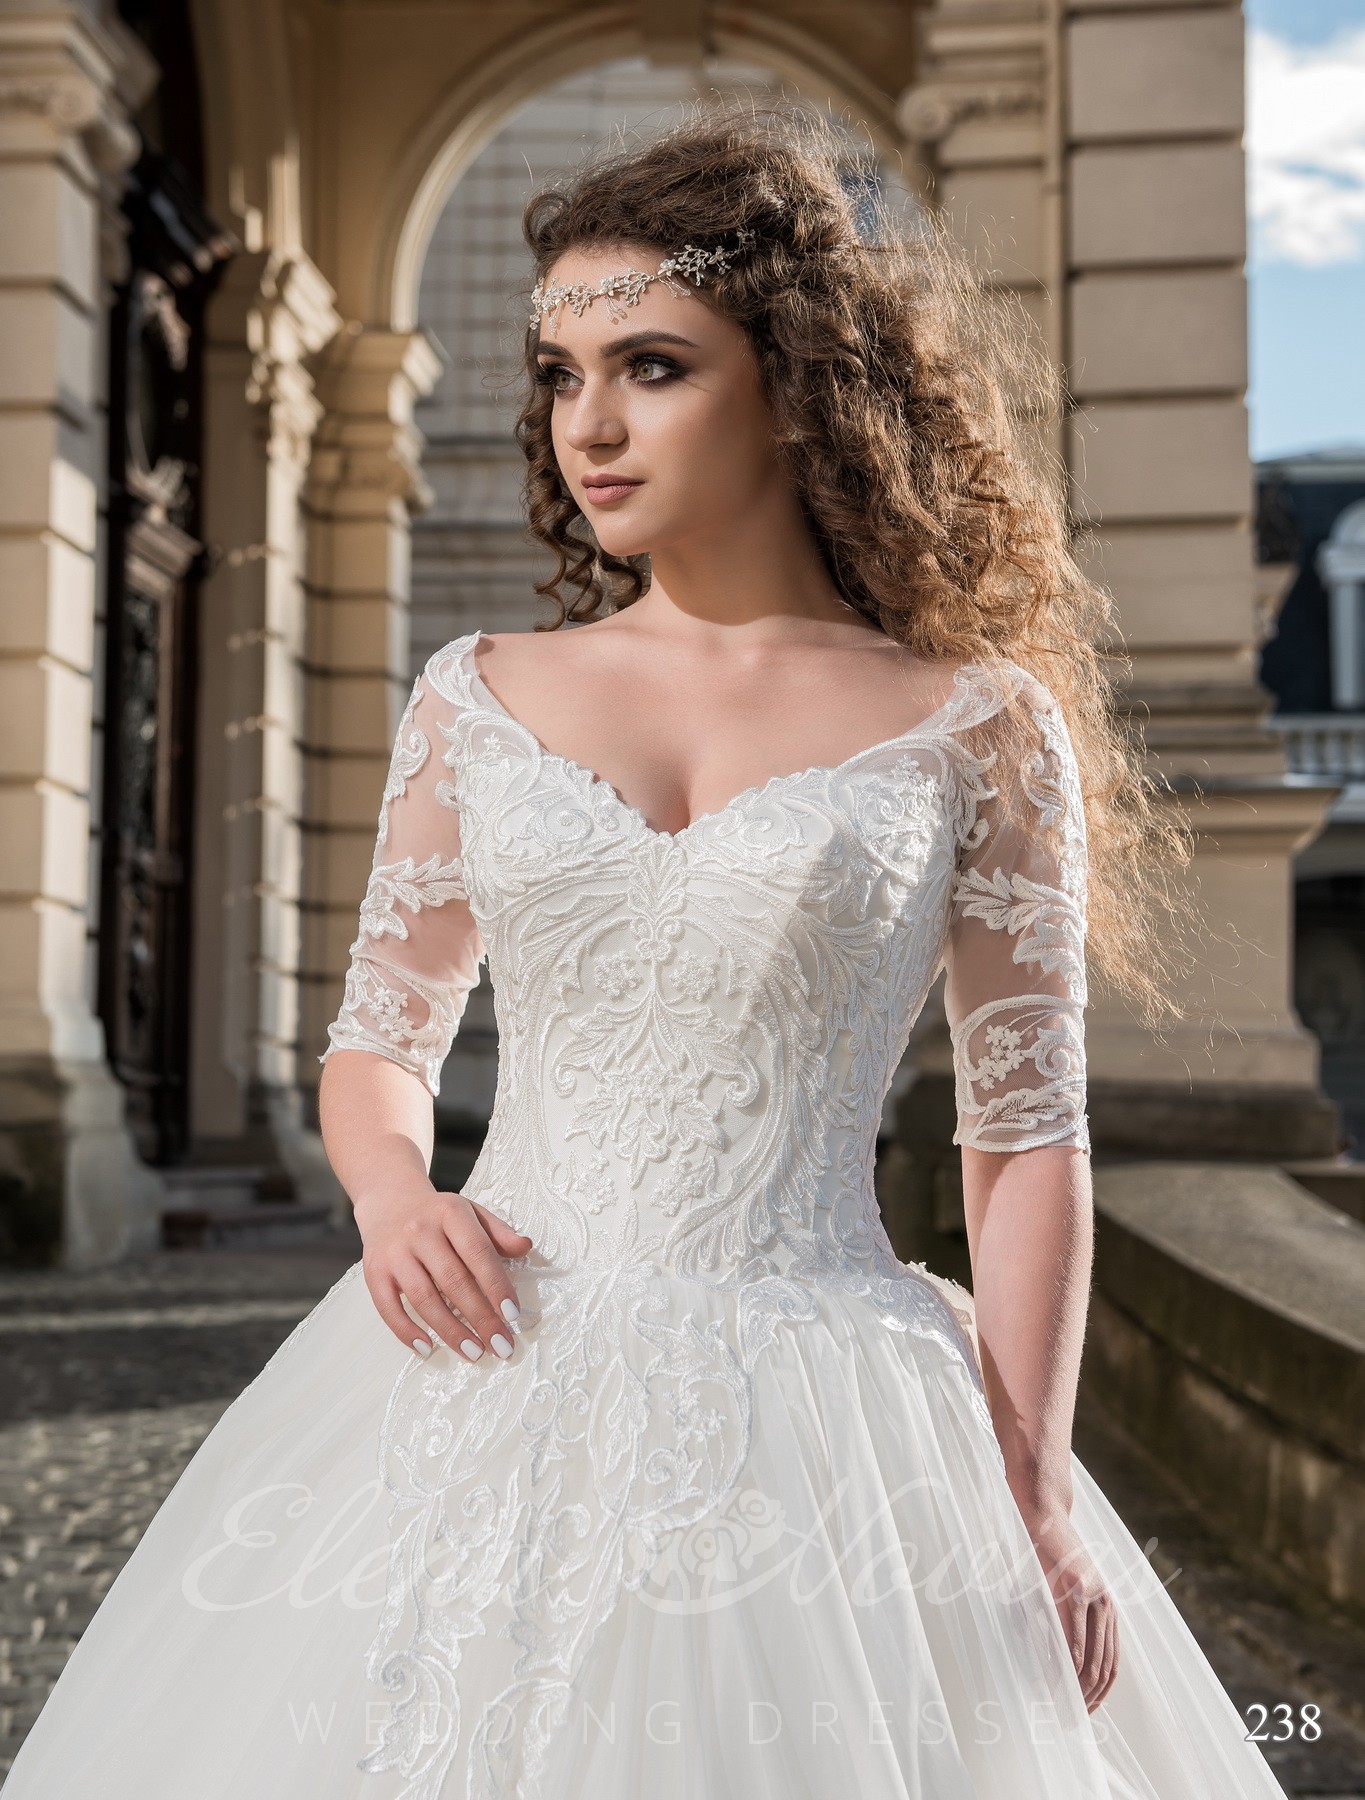 Wedding dress with an open corset model 238